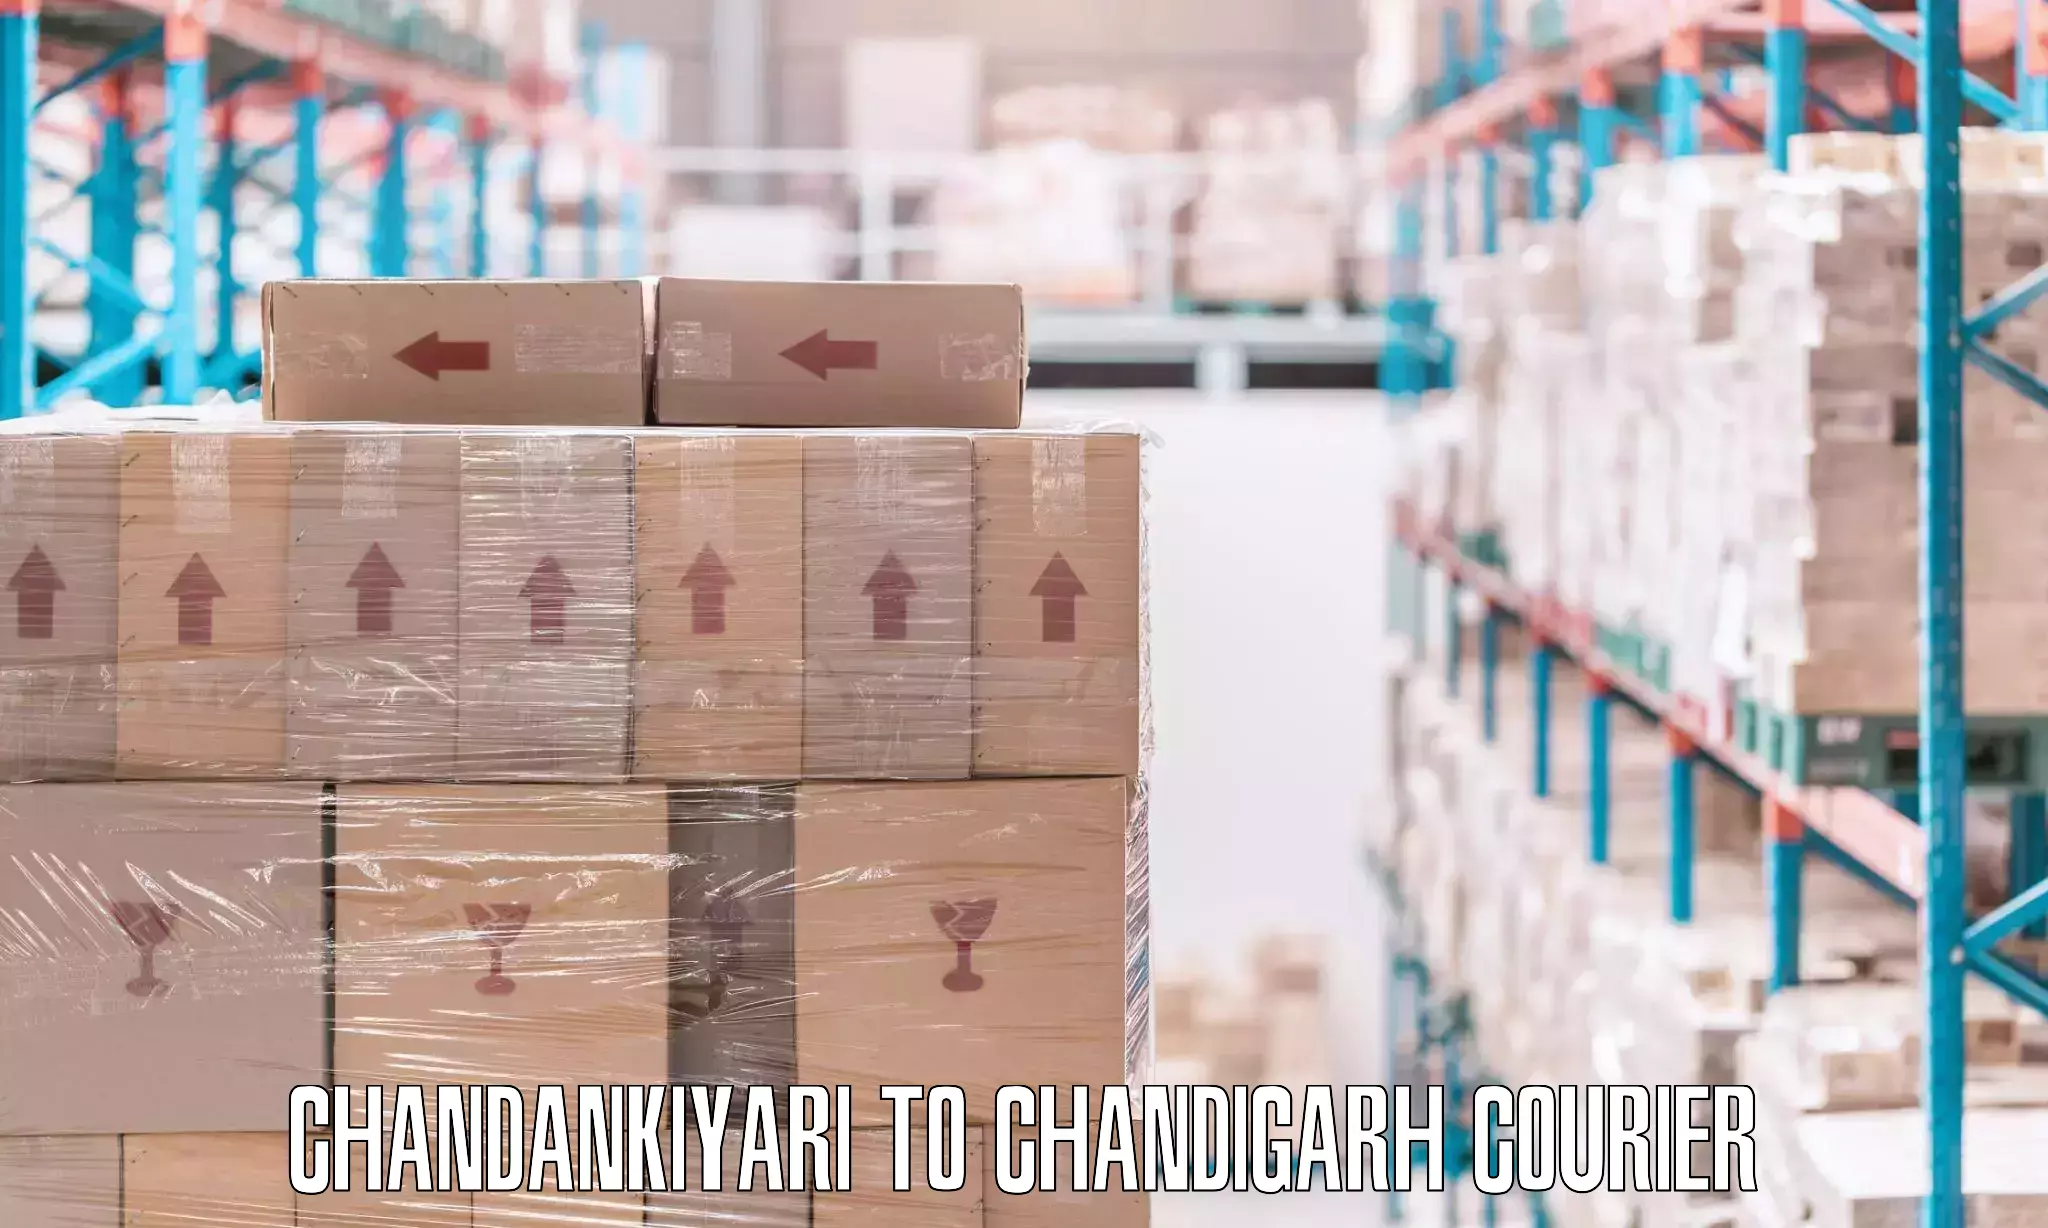 Seamless moving process Chandankiyari to Chandigarh